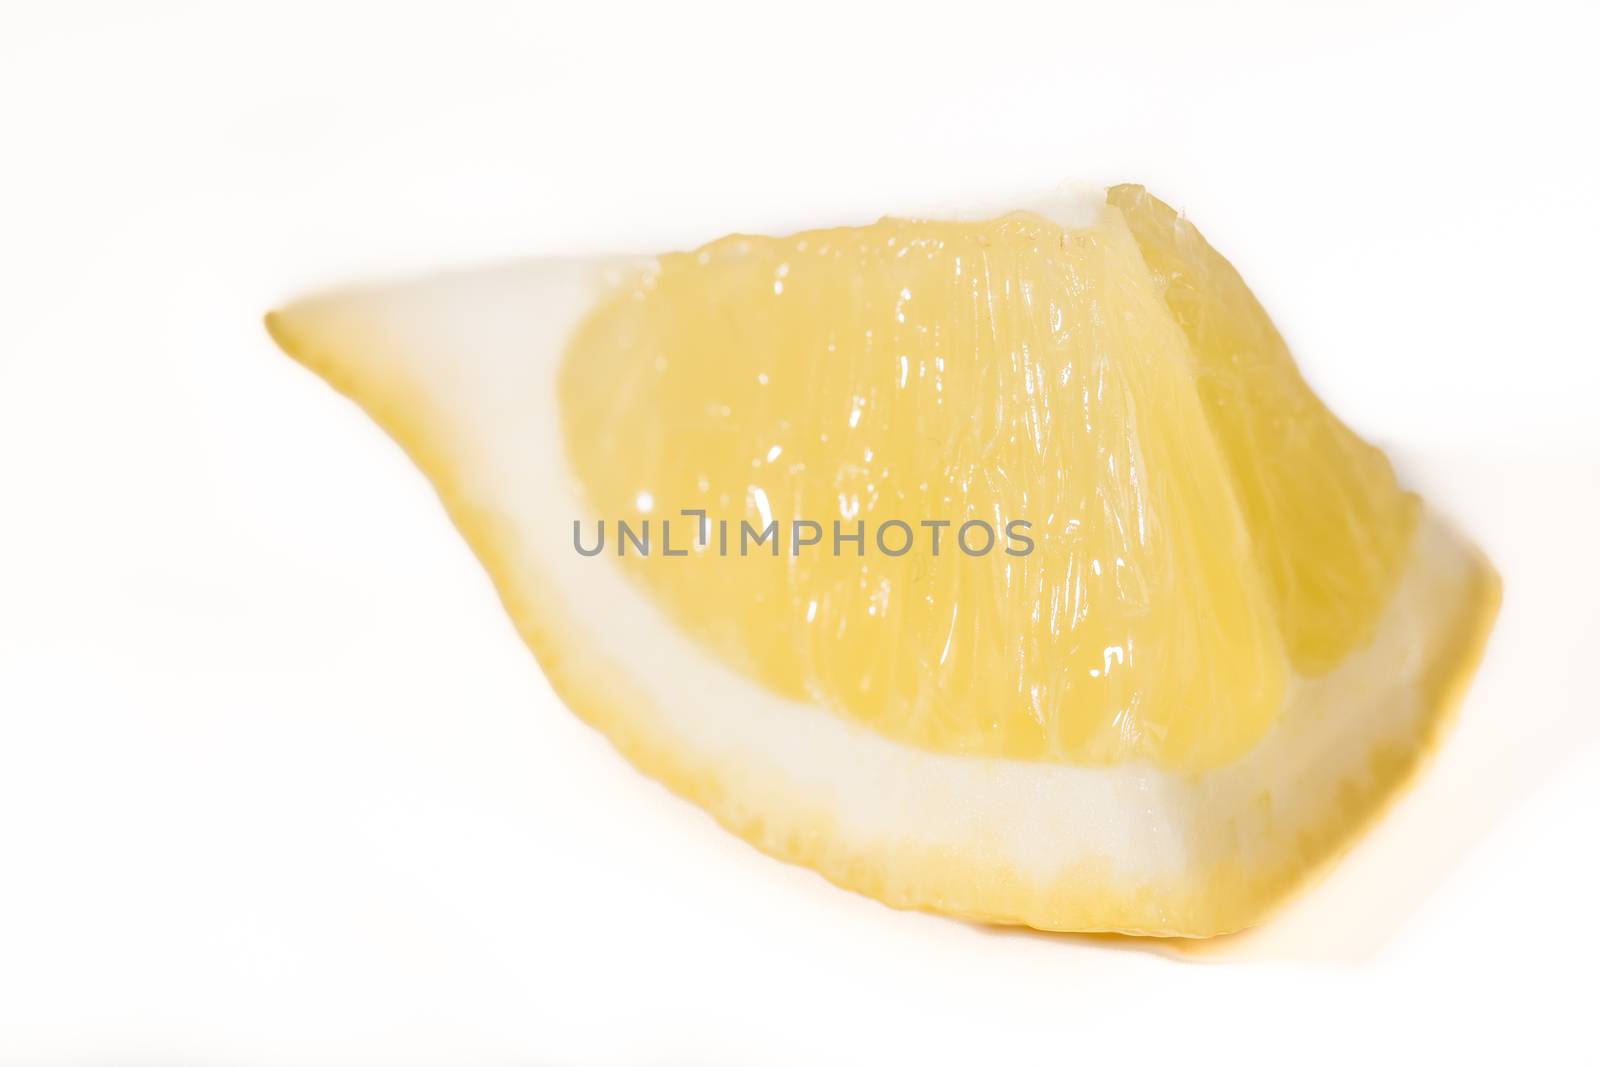 Detox lemon diet liver stomach on white background France